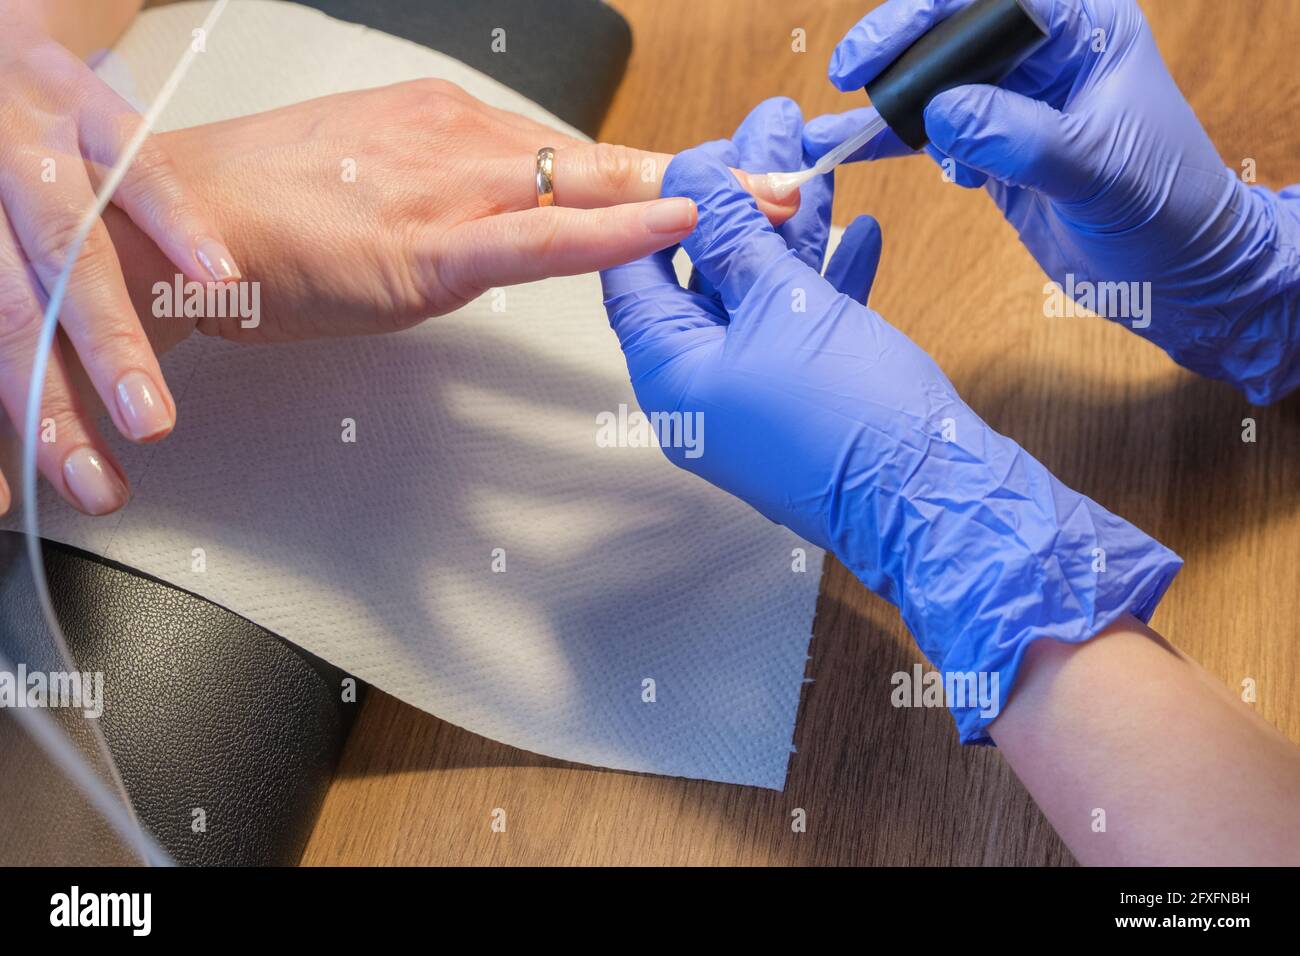 Hände eines Manikuristen in schützenden medizinischen Handschuhen während der Arbeit. Prävention und Schutz vor Viren und Bakterien während einer Maniküre Stockfoto